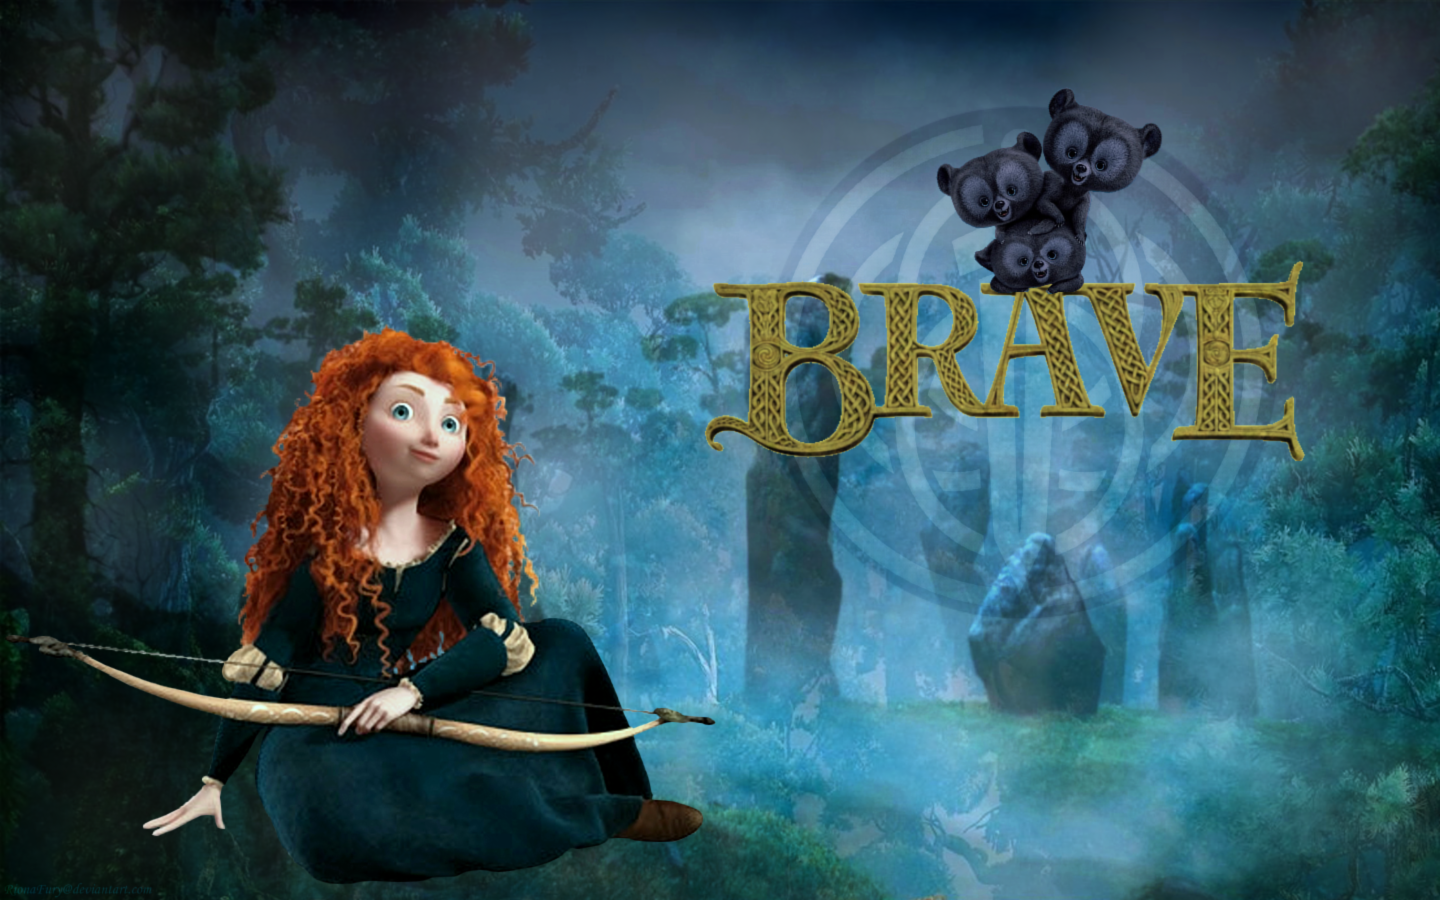 Brave Wallpaper: Brave Merida. Movie wallpaper, Brave movie, Brave wallpaper